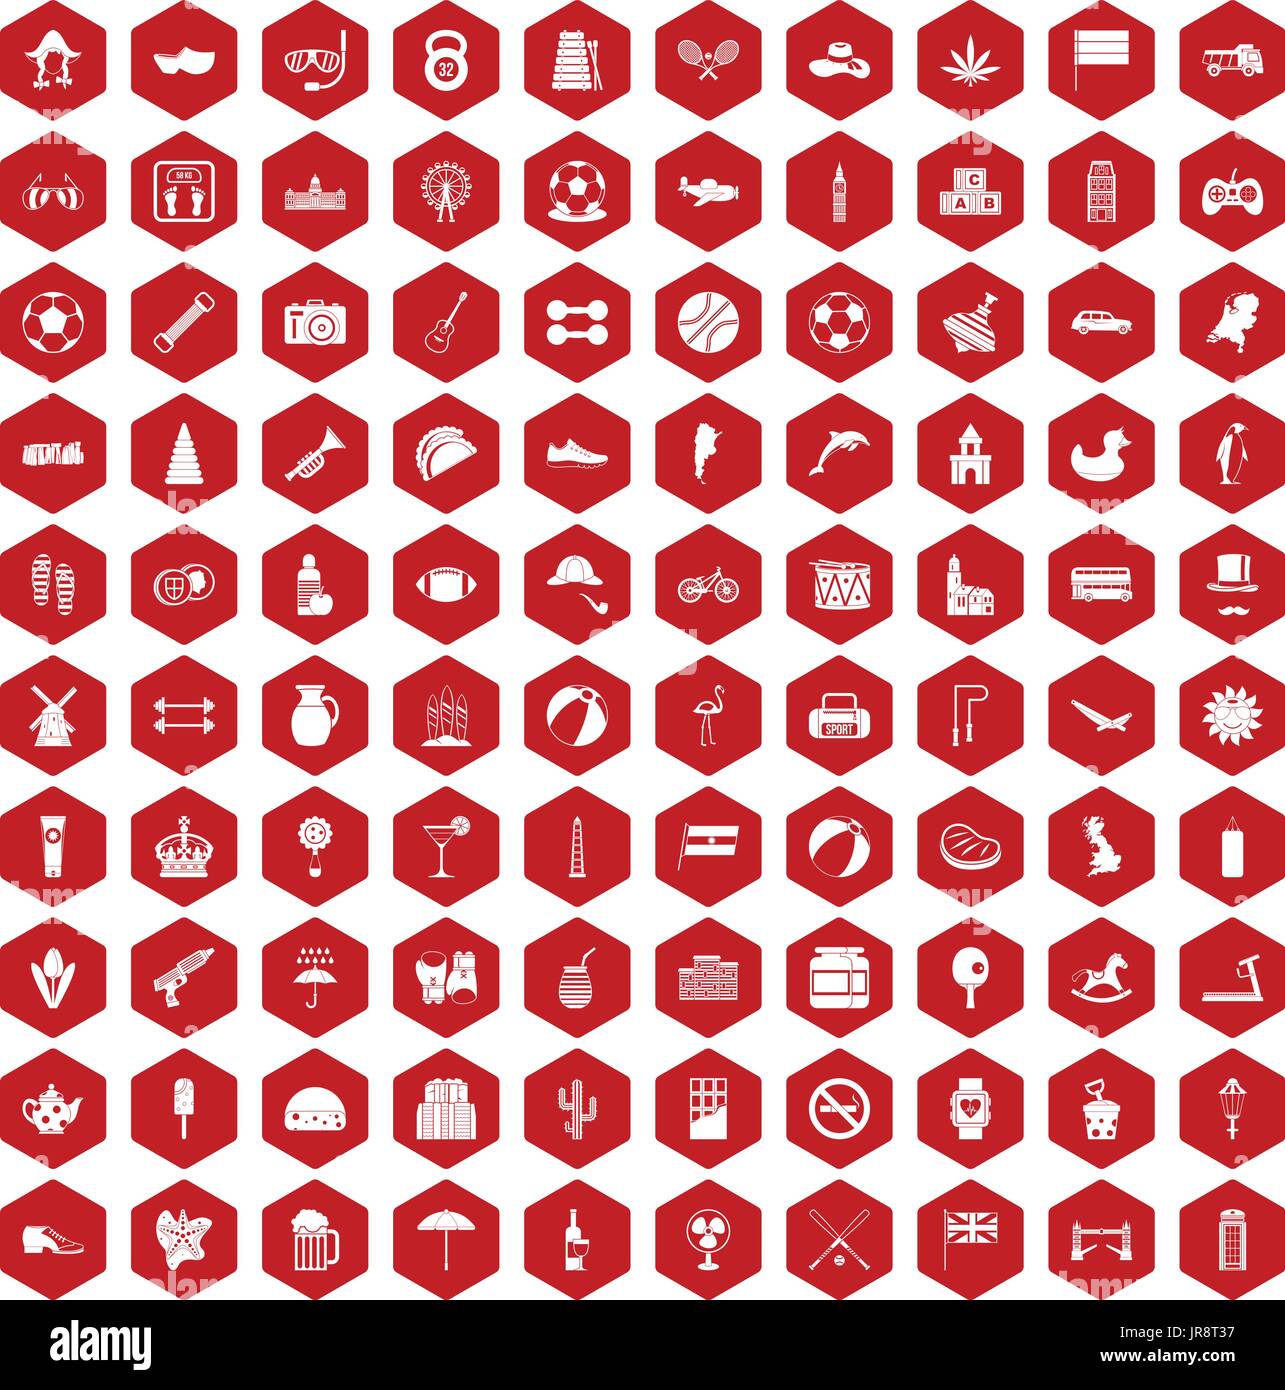 100 ball icons hexagon red Stock Vector